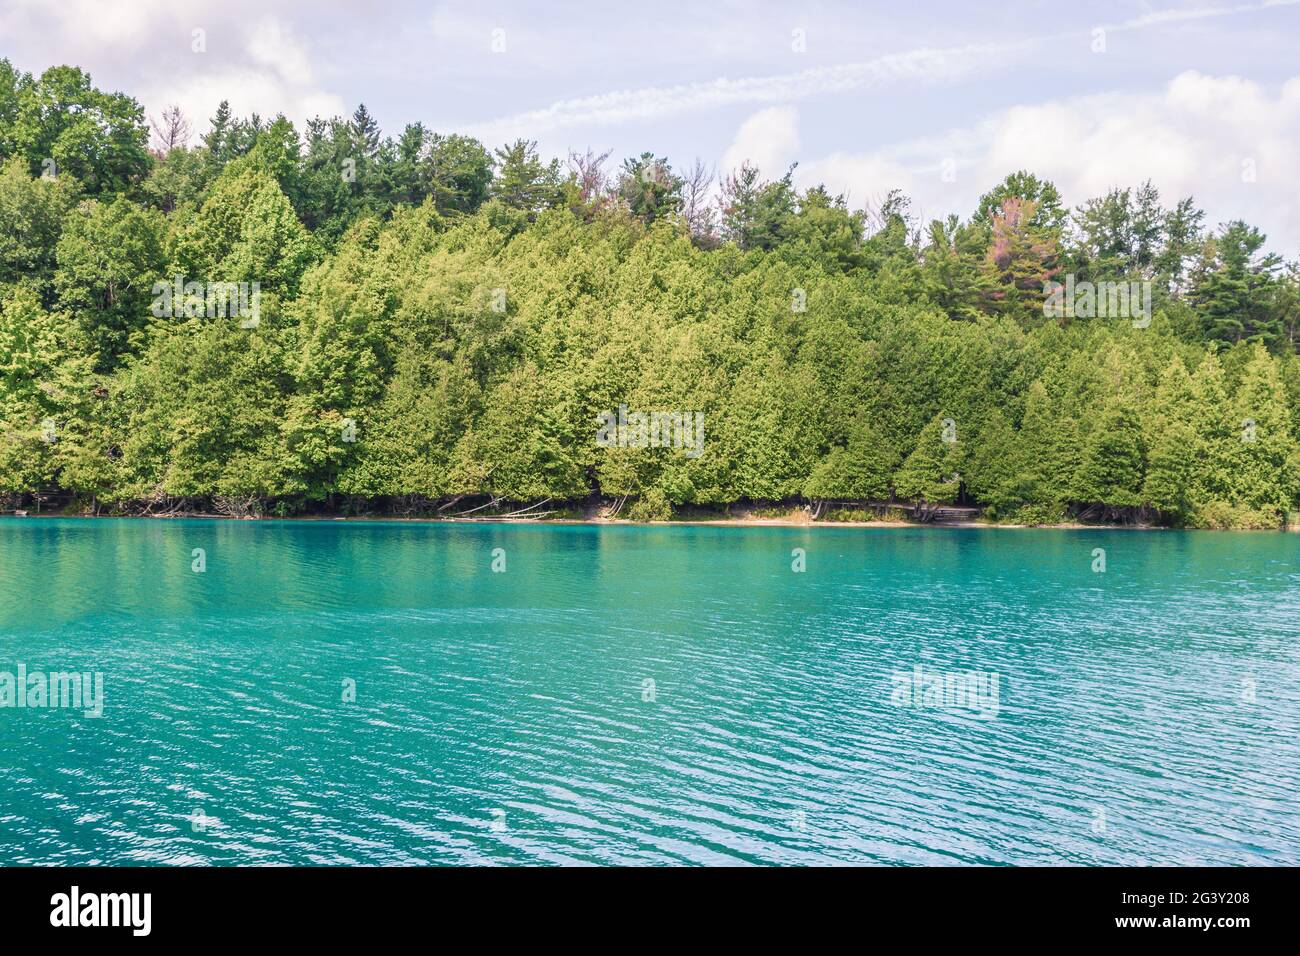 Belle scène de lac, avec une rive bordée d'arbres et de l'eau turquoise, prise à Syracuse NY, Etats-Unis. Banque D'Images